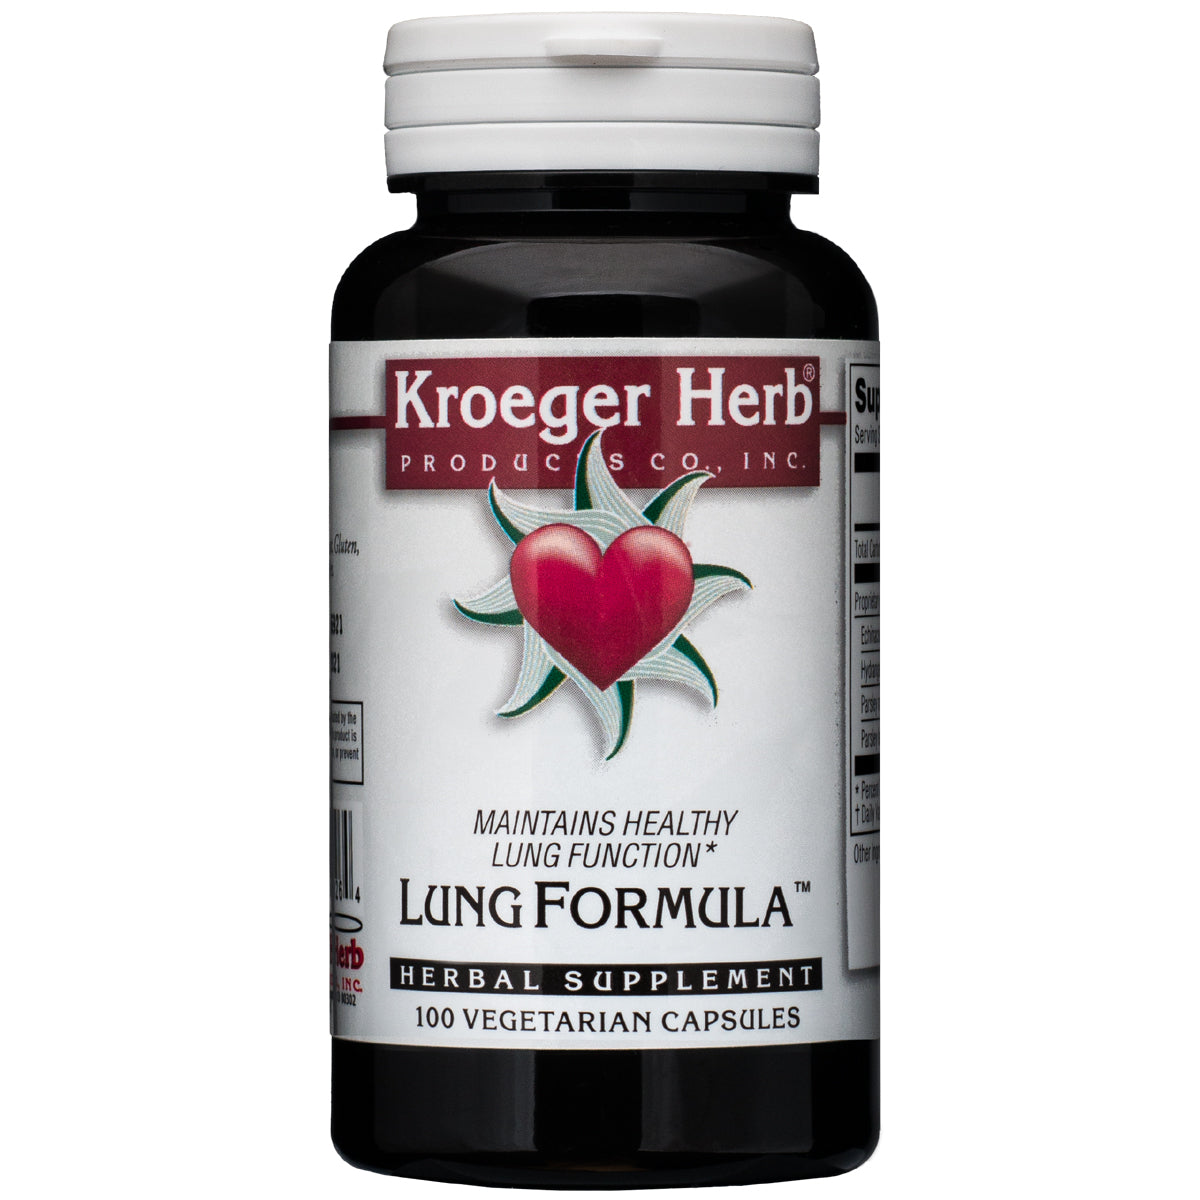 Lung Formula™ (formerly Sound Breath®)